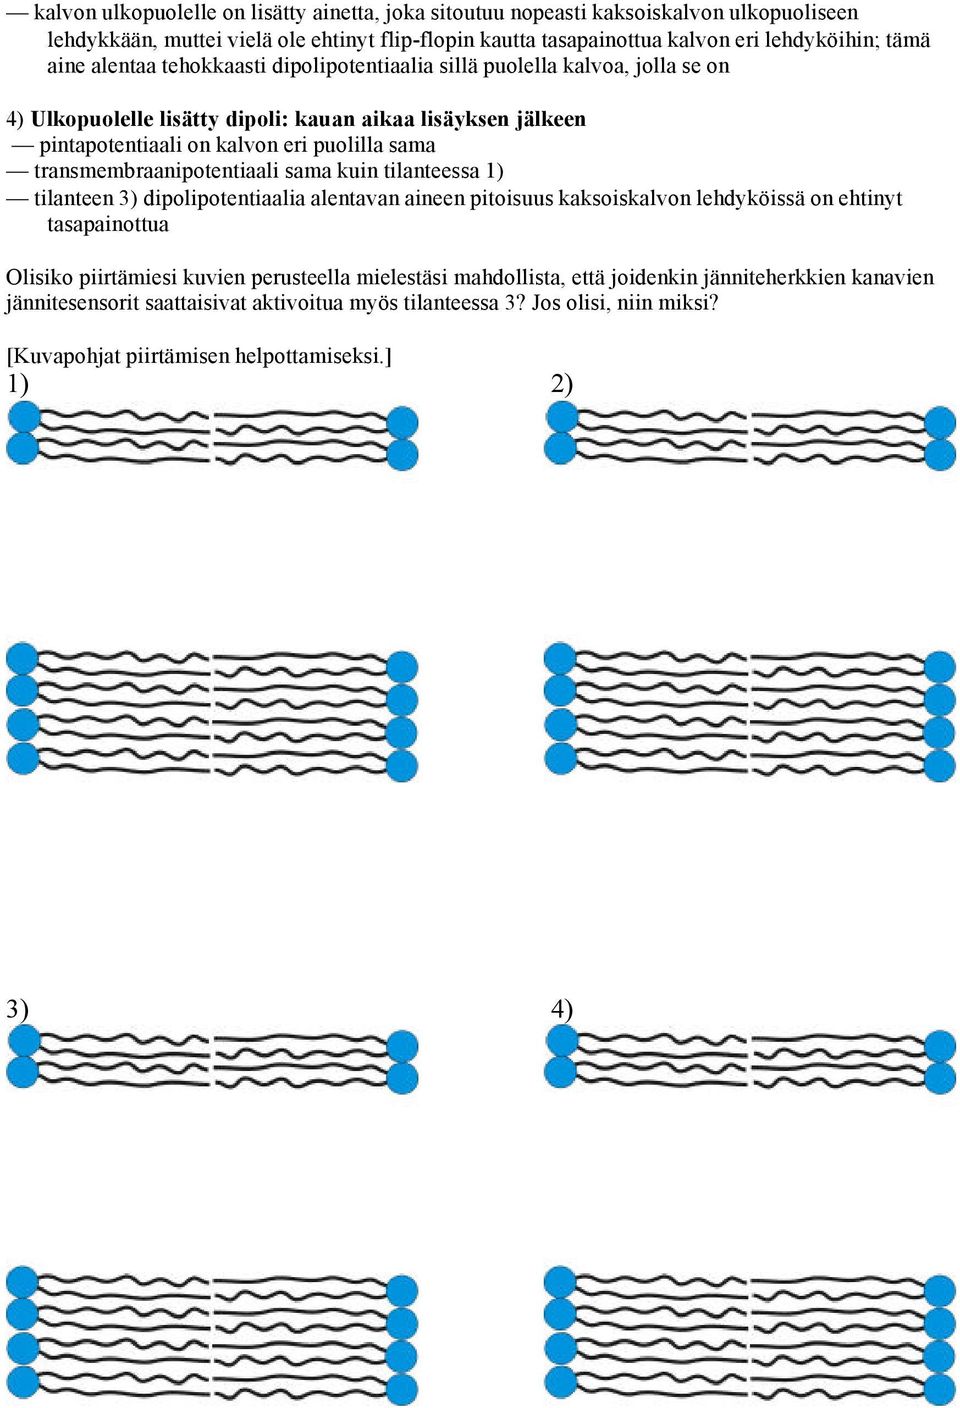 transmembraanipotentiaali sama kuin tilanteessa 1) tilanteen 3) dipolipotentiaalia alentavan aineen pitoisuus kaksoiskalvon lehdyköissä on ehtinyt tasapainottua Olisiko piirtämiesi kuvien